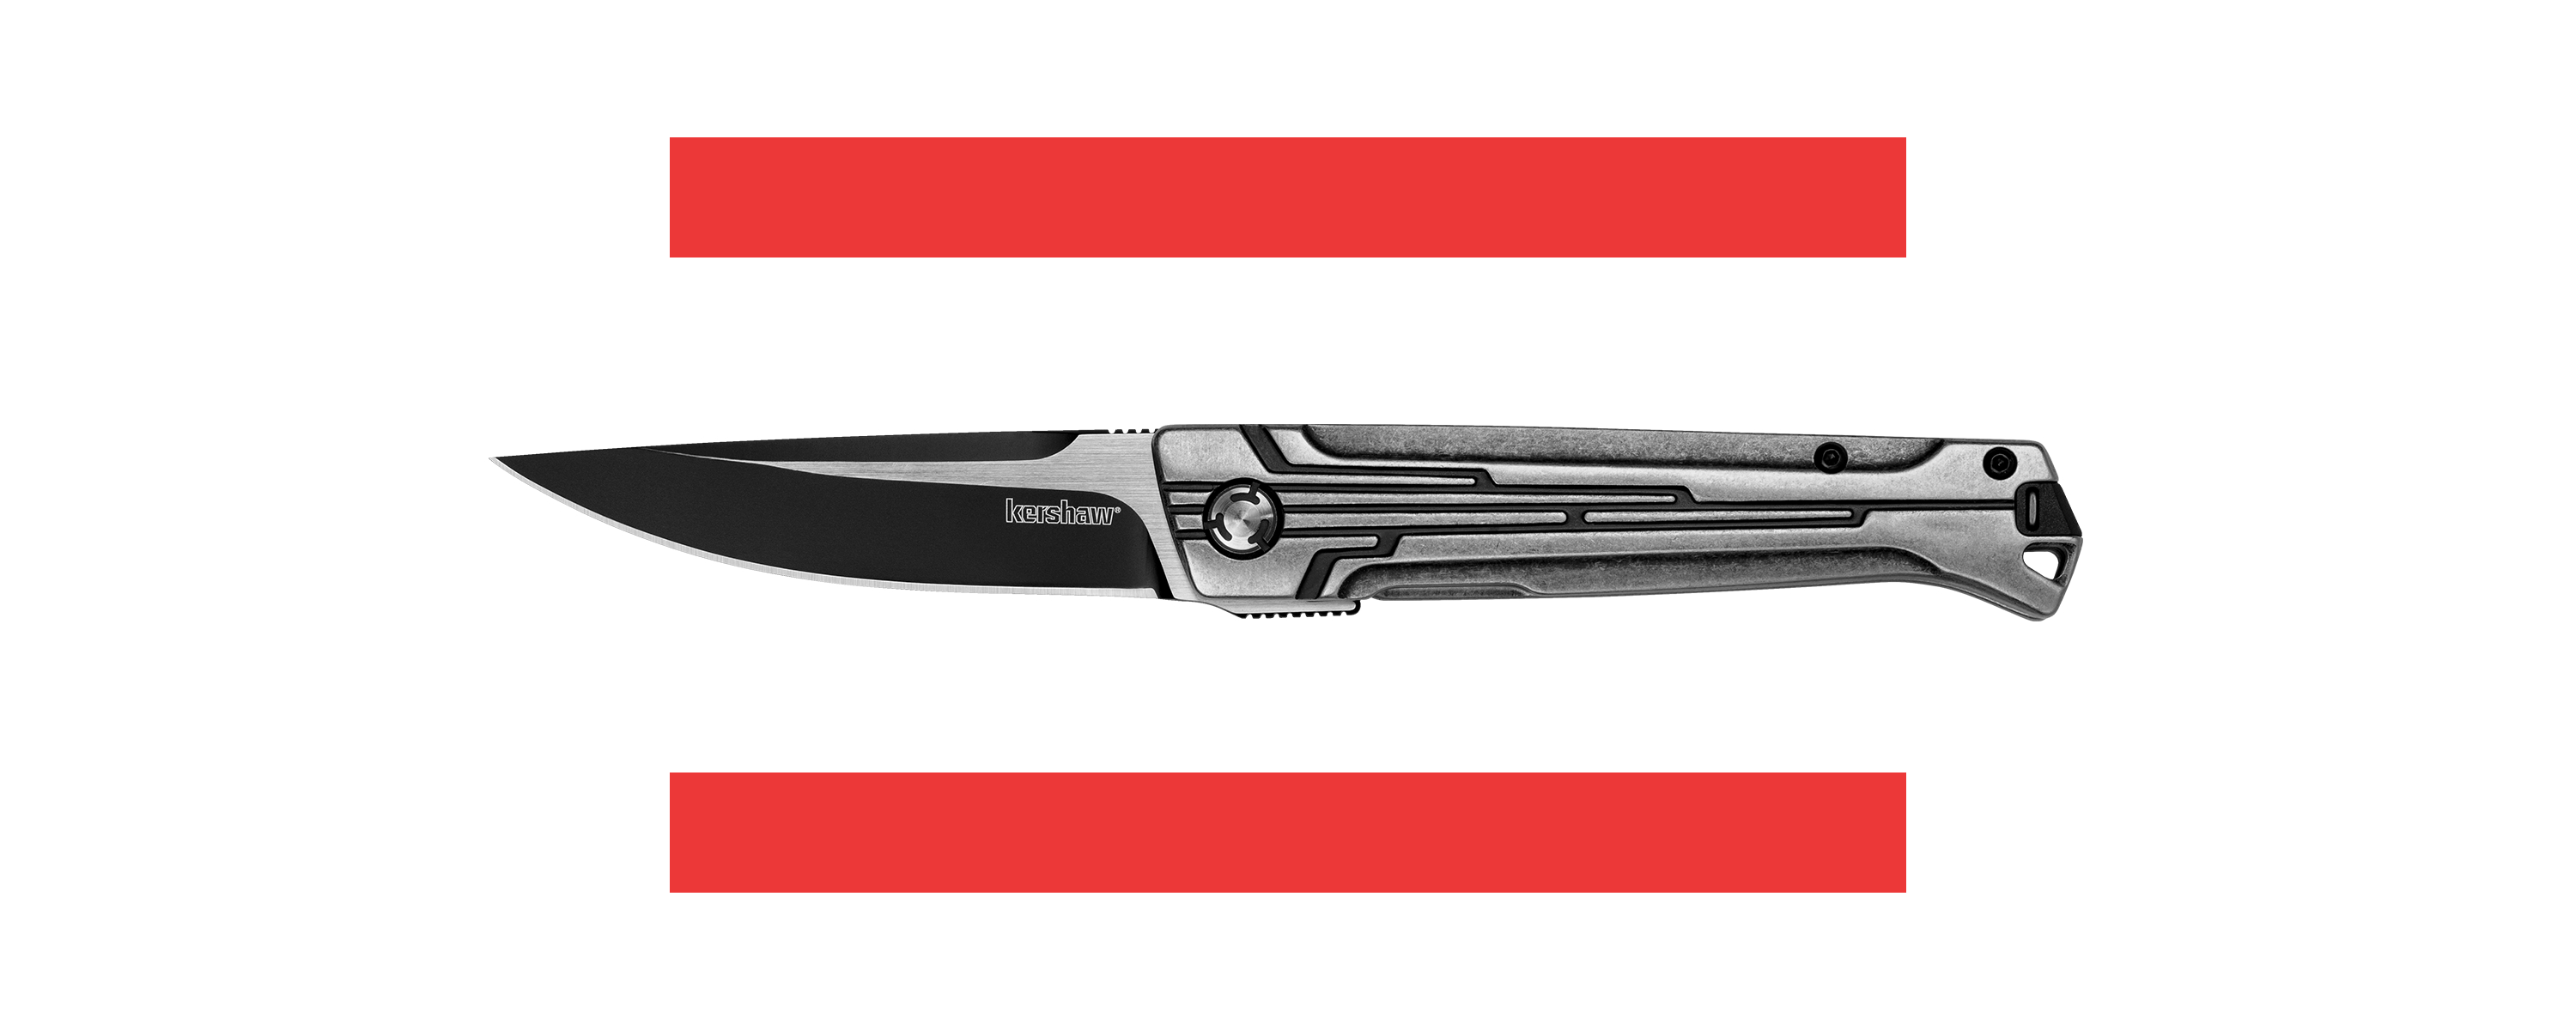 16 Professional Fleshing Knife